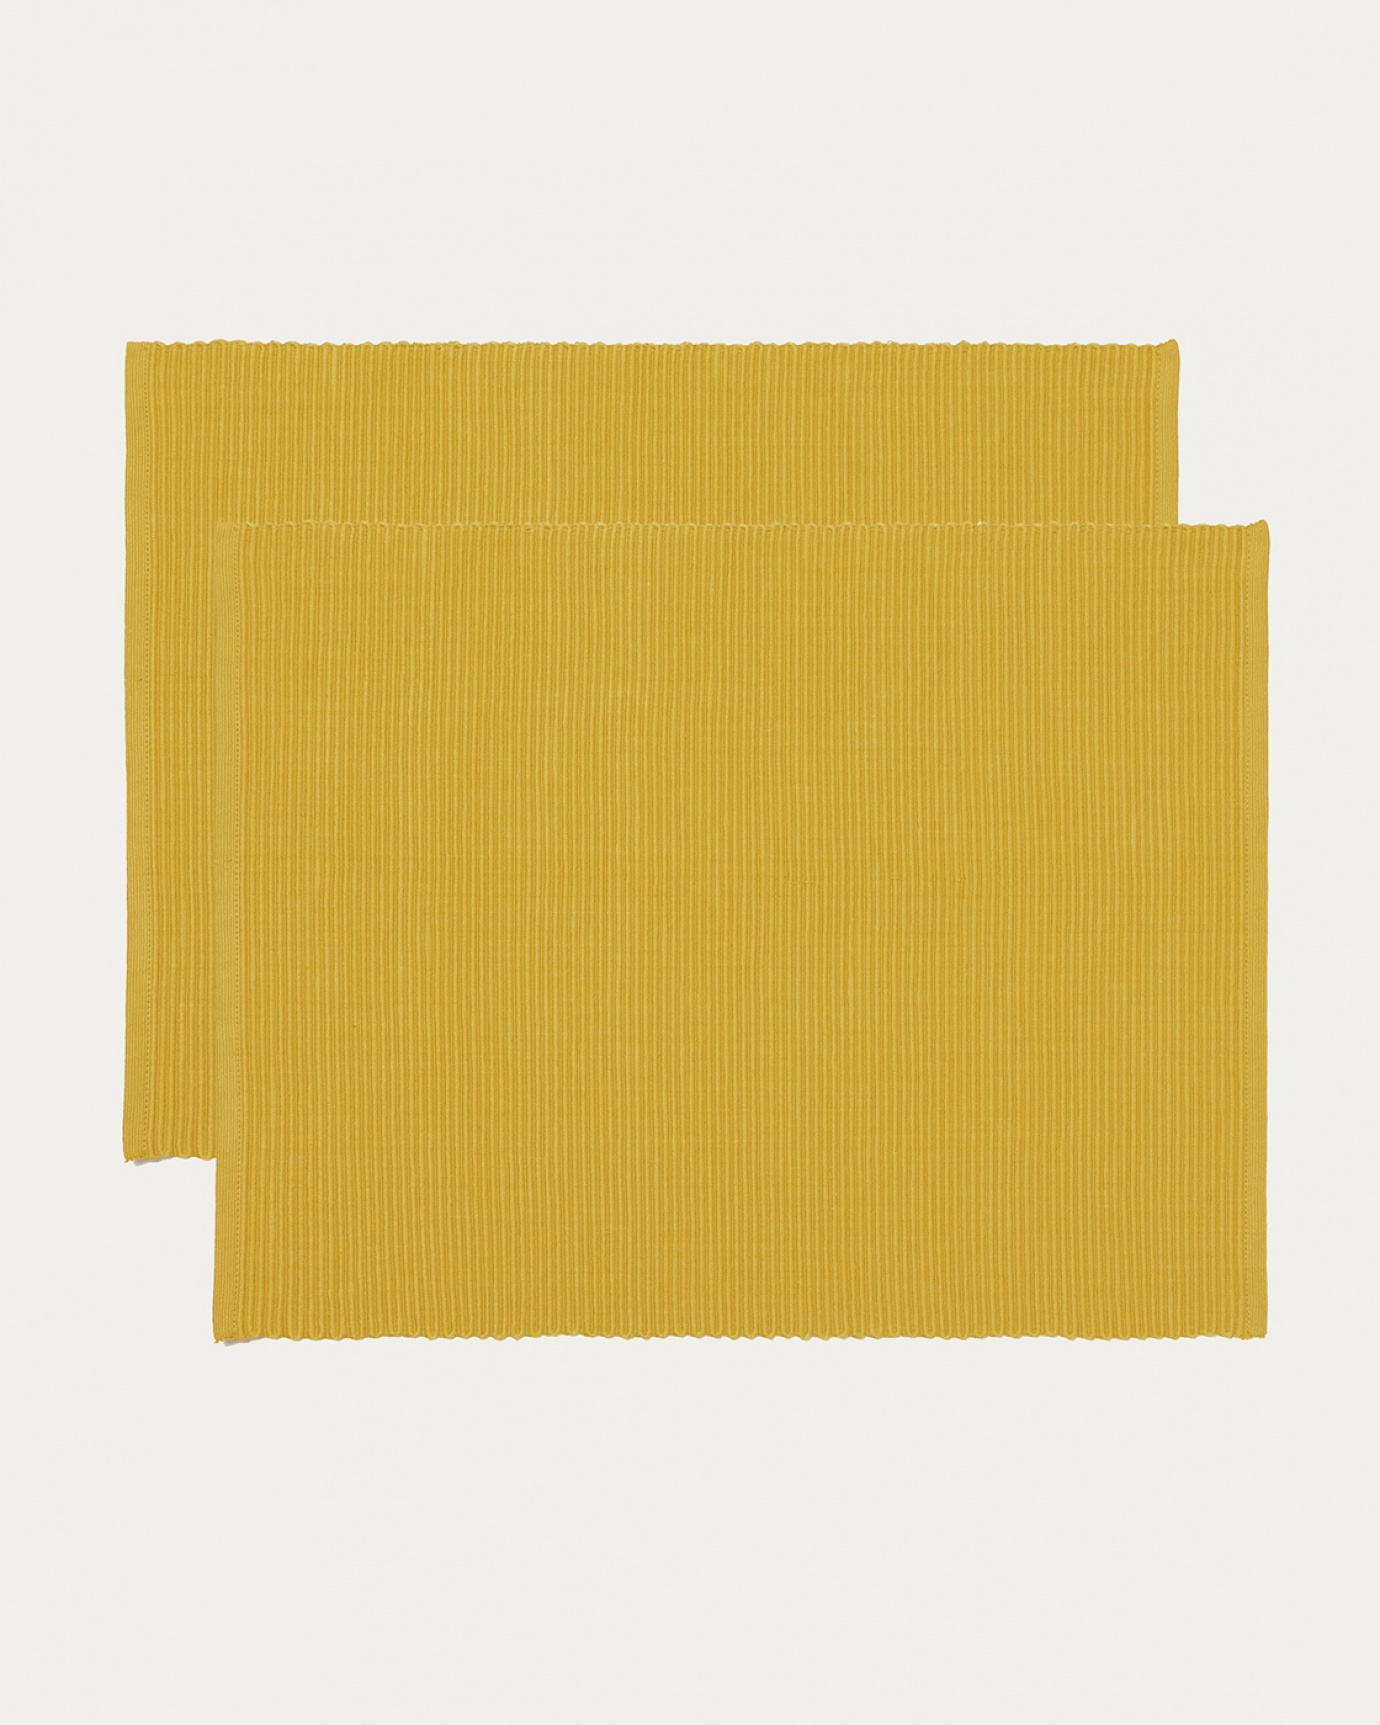 Immagine prodotto giallo mostarda tovaglietta UNI in morbido cotone a costine di qualità di LINUM DESIGN. Dimensioni 35x46 cm e venduto in 2-pezzi.